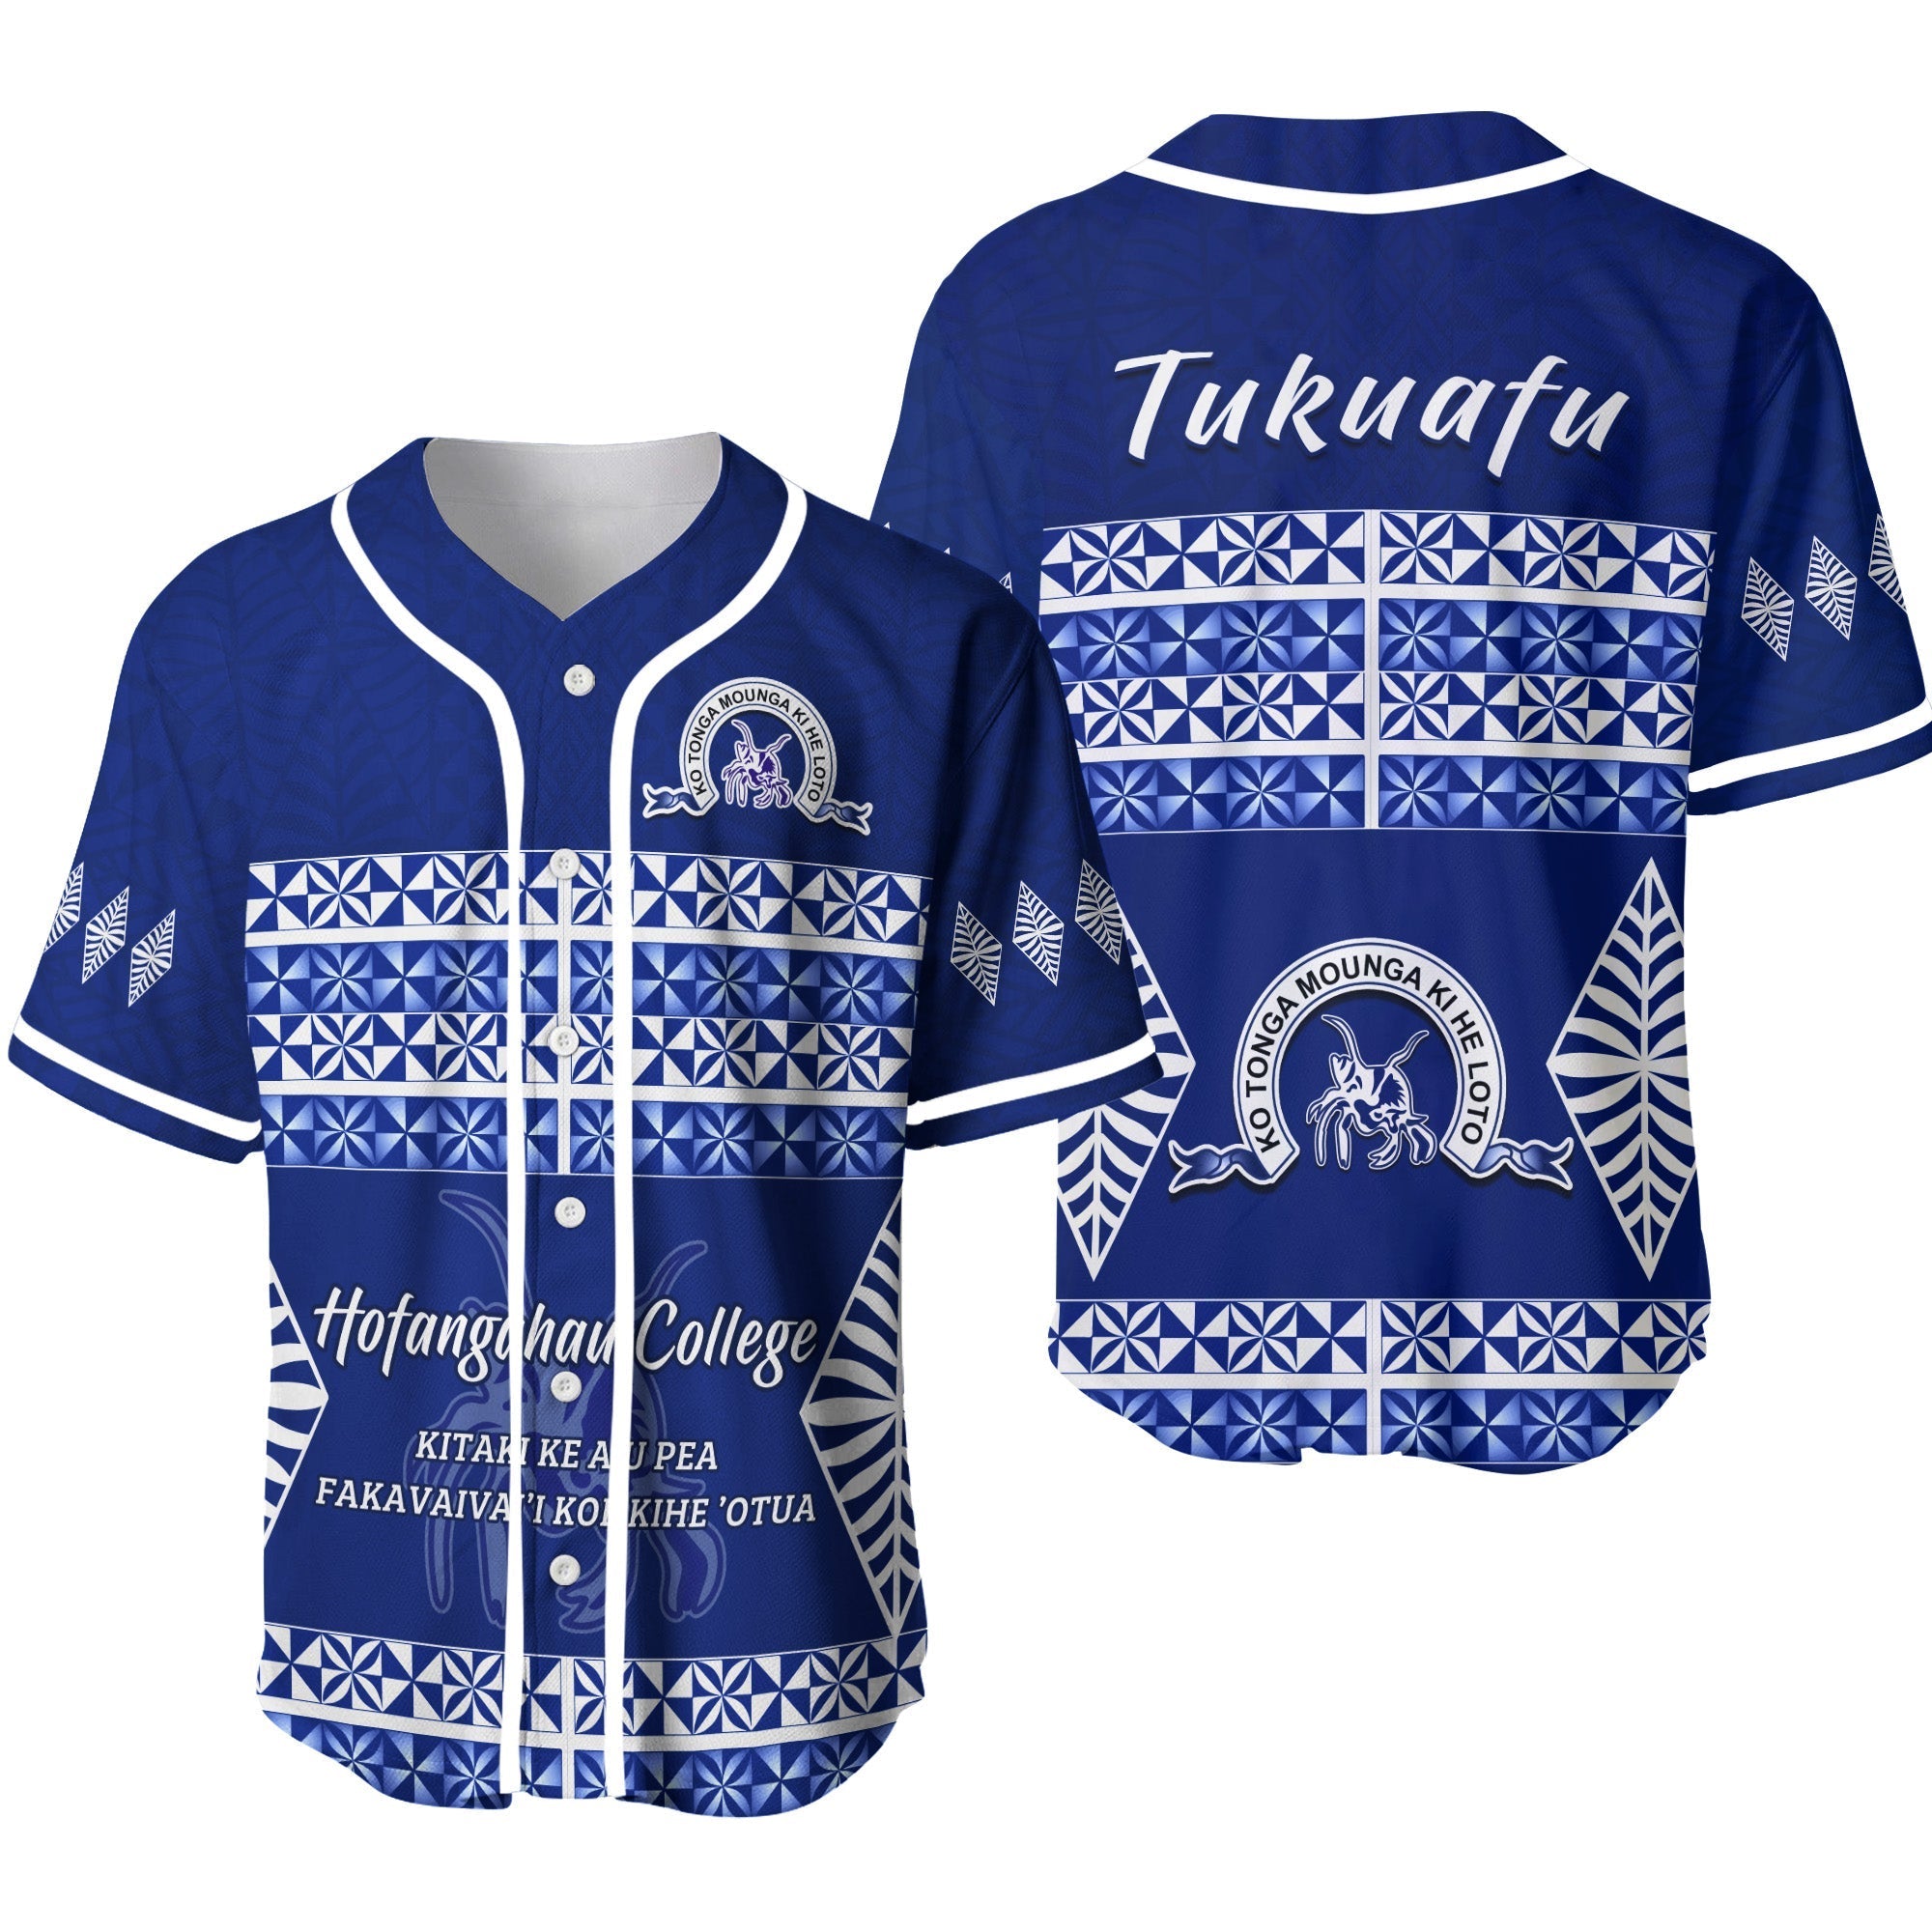 tukuafu-hofangahau-college-baseball-jersey